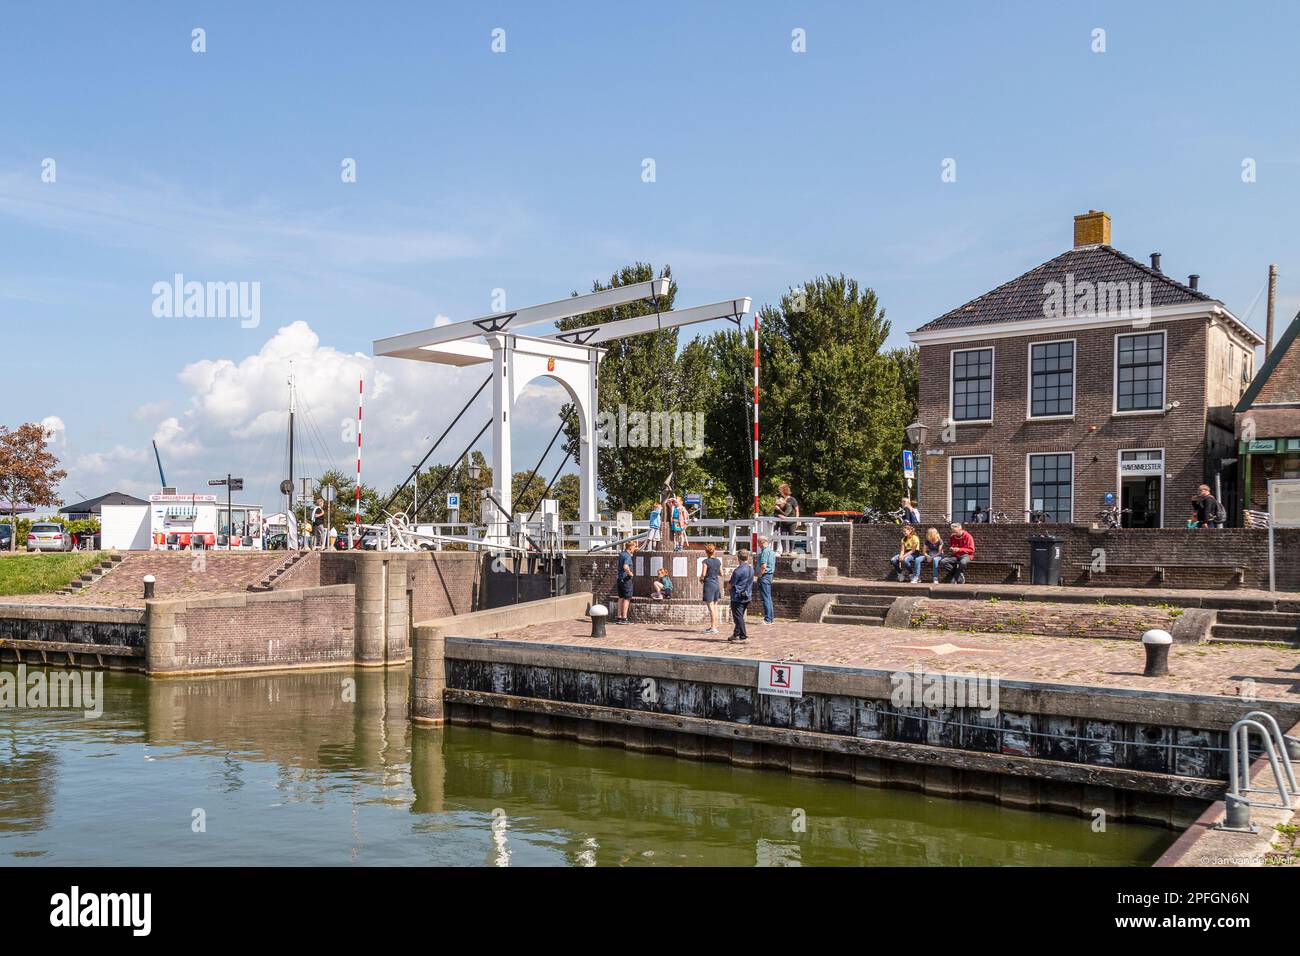 Persone lungo la banchina con il ponte levatoio bianco nel centro del pittoresco villaggio di pescatori di Stavoren, sull'IJsselmeer. Foto Stock